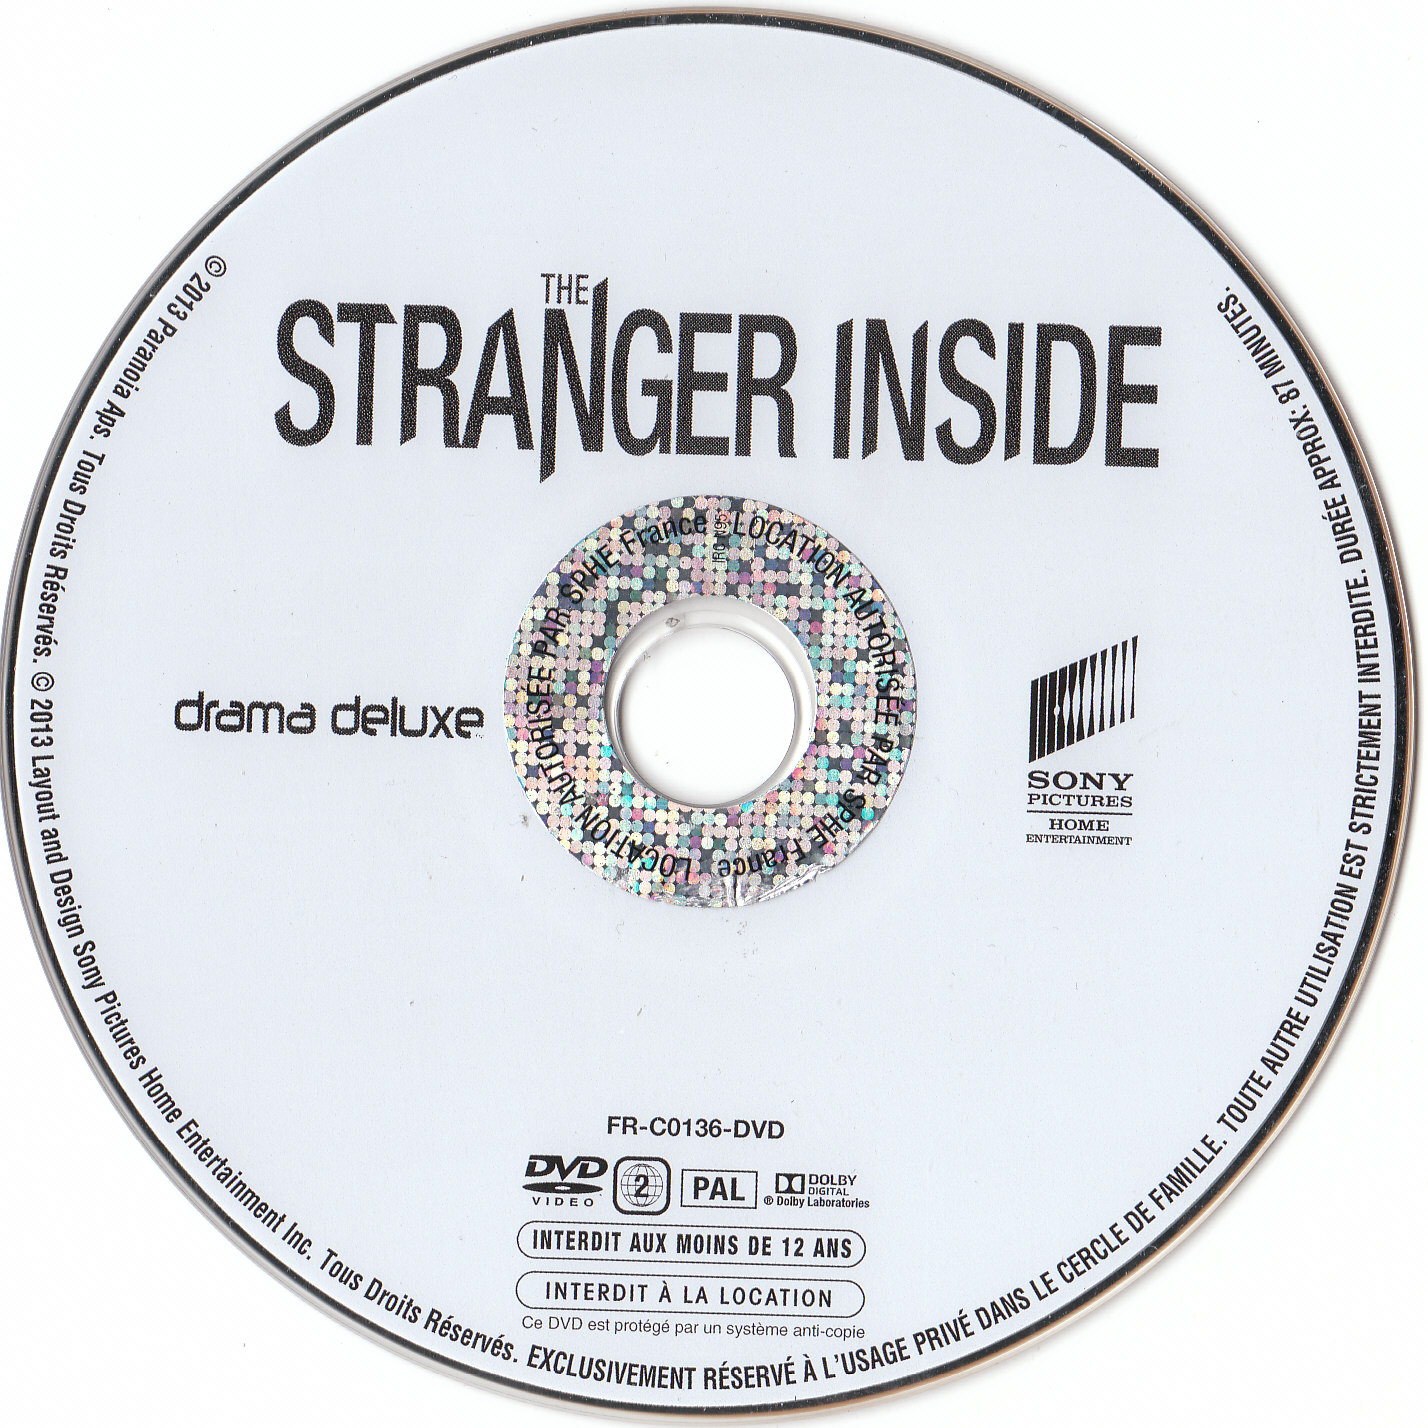 The stranger inside